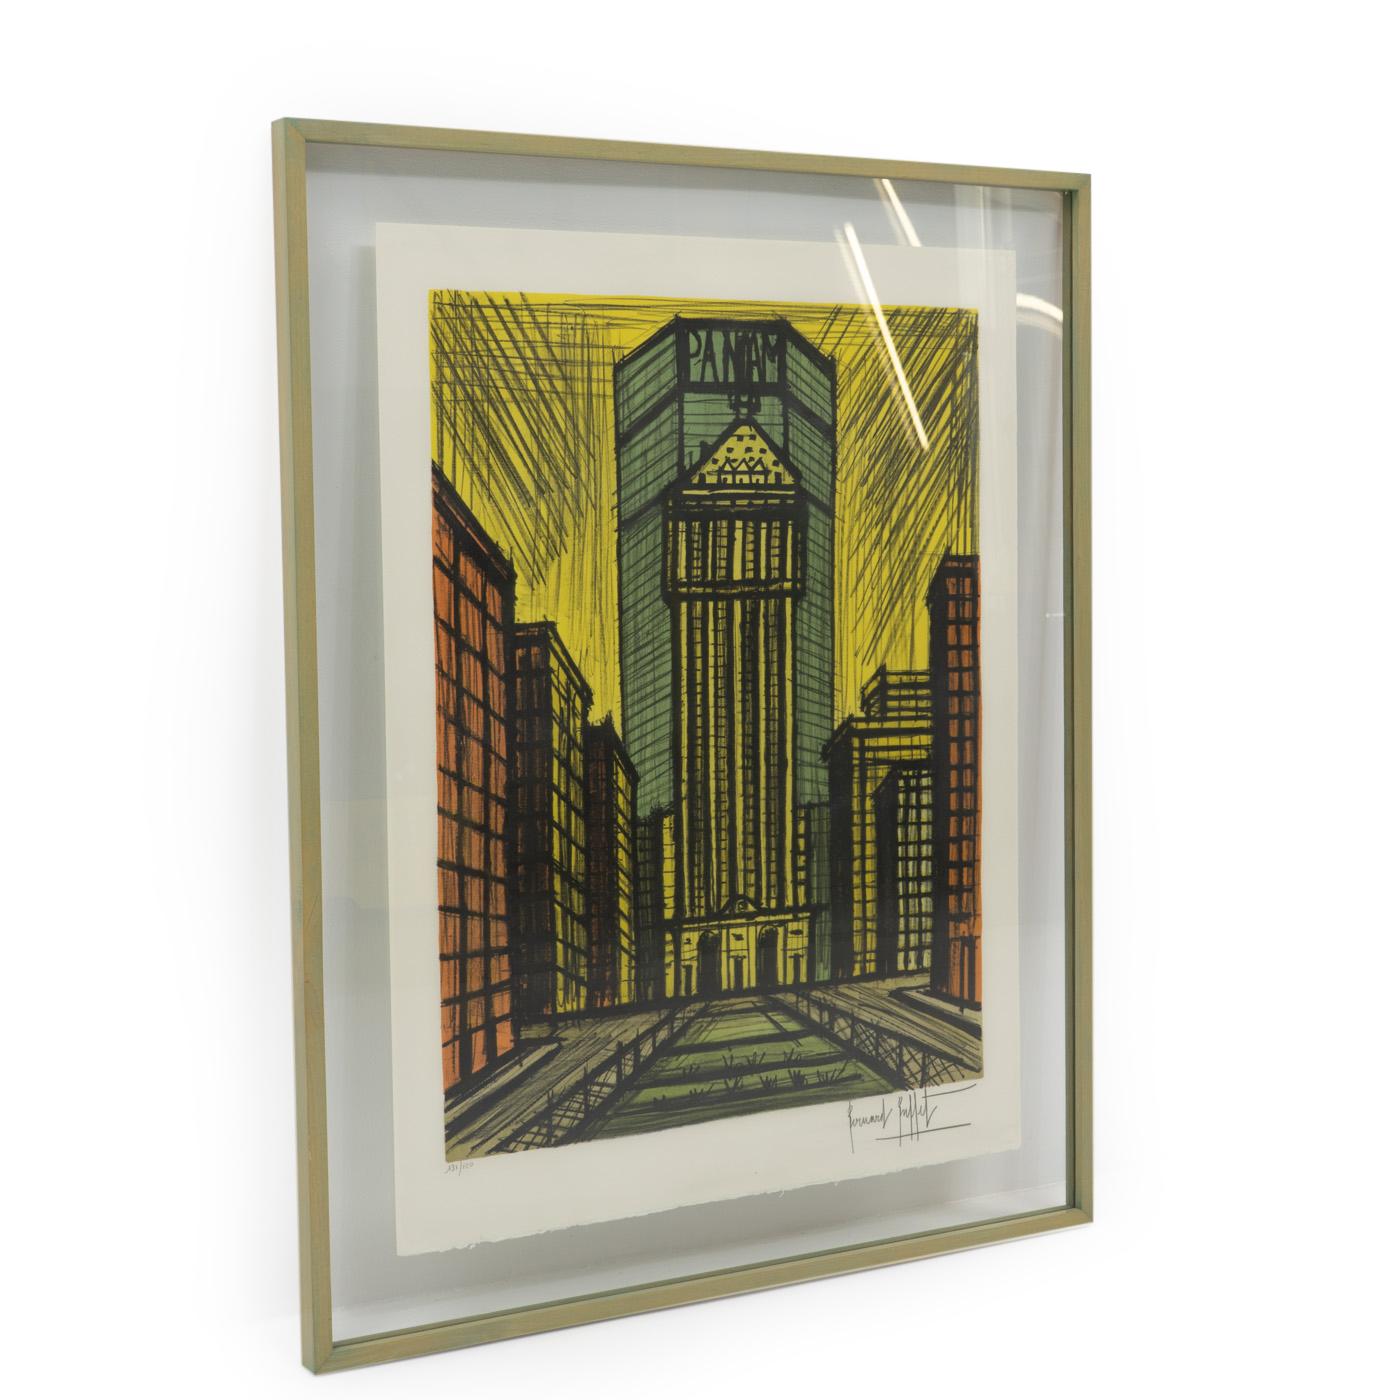 Rare lithographie en couleur de Bernard Buffet ( 1928 - 1999) représentant le Panam building, New York City. La lithographie est en excellent état, encadrée professionnellement, et signée et numérotée par l'artiste. 


A propos de l'artiste